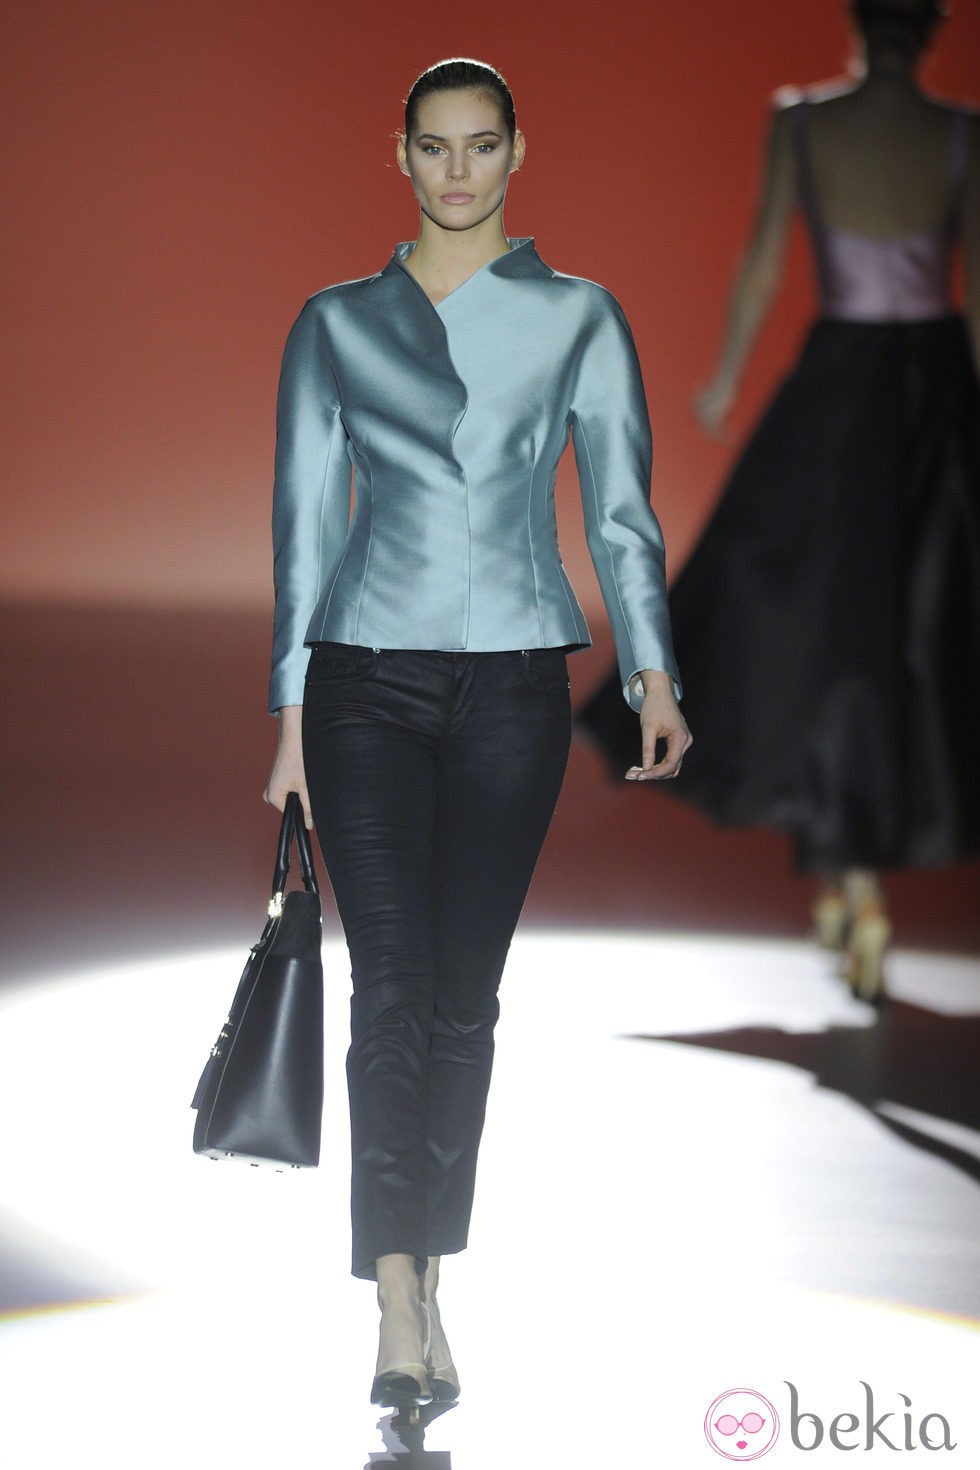 Pantalón y blusa de la colección otoño/invierno 2014/2015 de Hannibal Laguna en Madrid Fashion Week